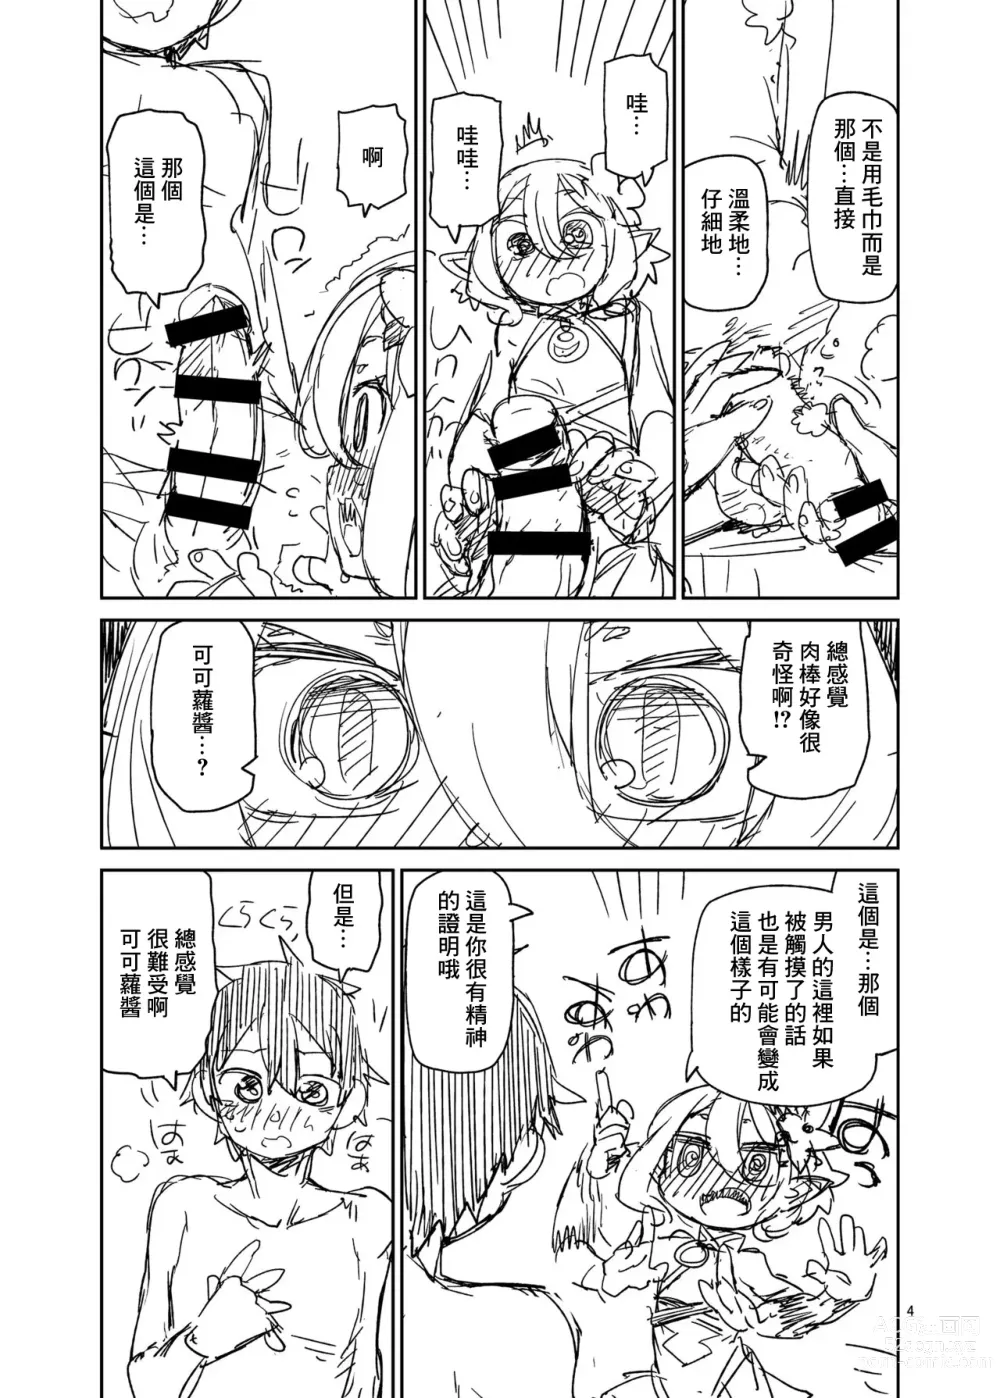 Page 5 of doujinshi Aruji-sama Ofuro de Gozaimasu yo